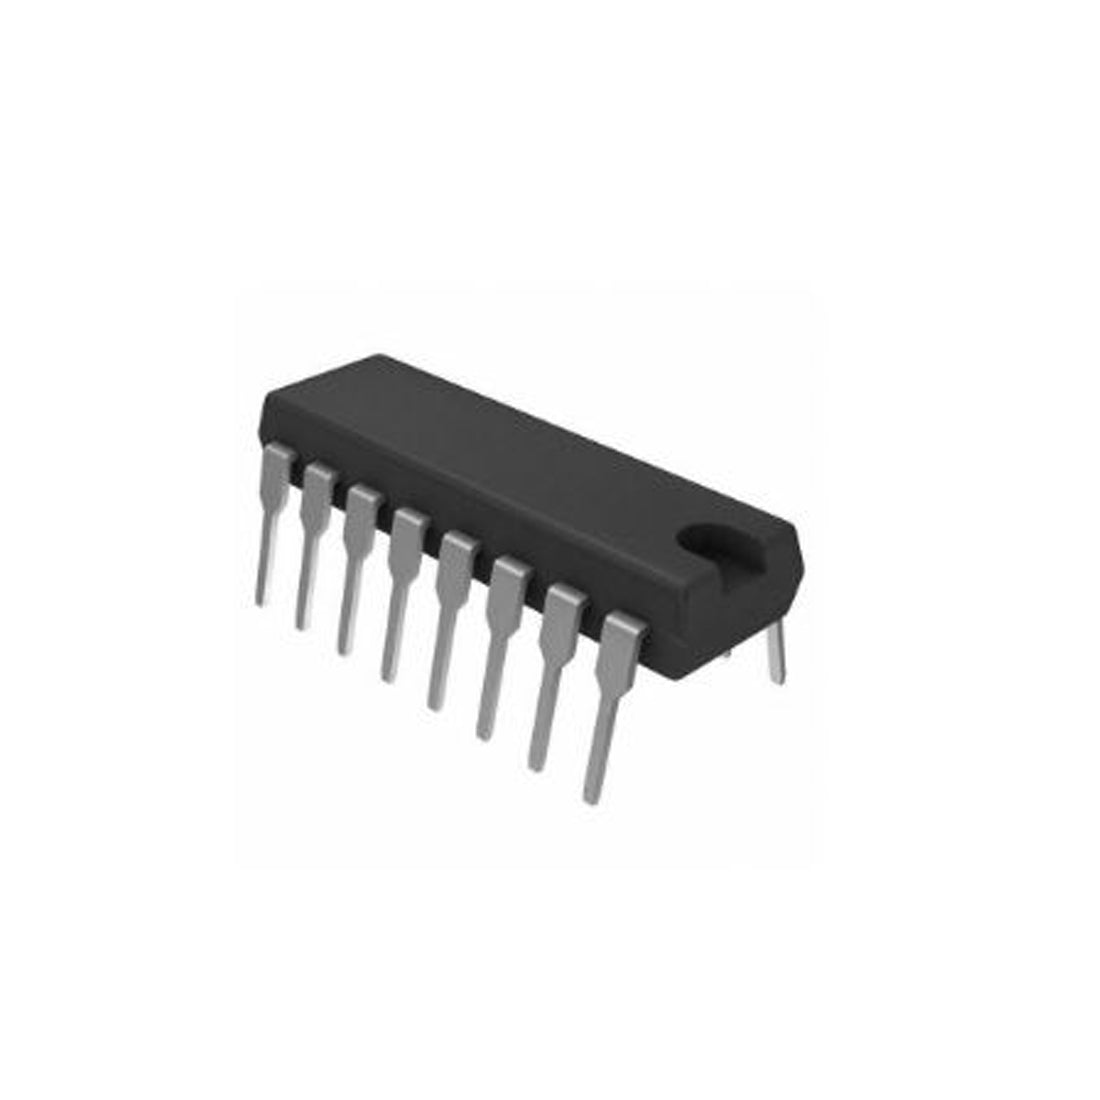 PHILIPS TDA3843 componente integrato,circuito integrato, transistor, 16 contatti